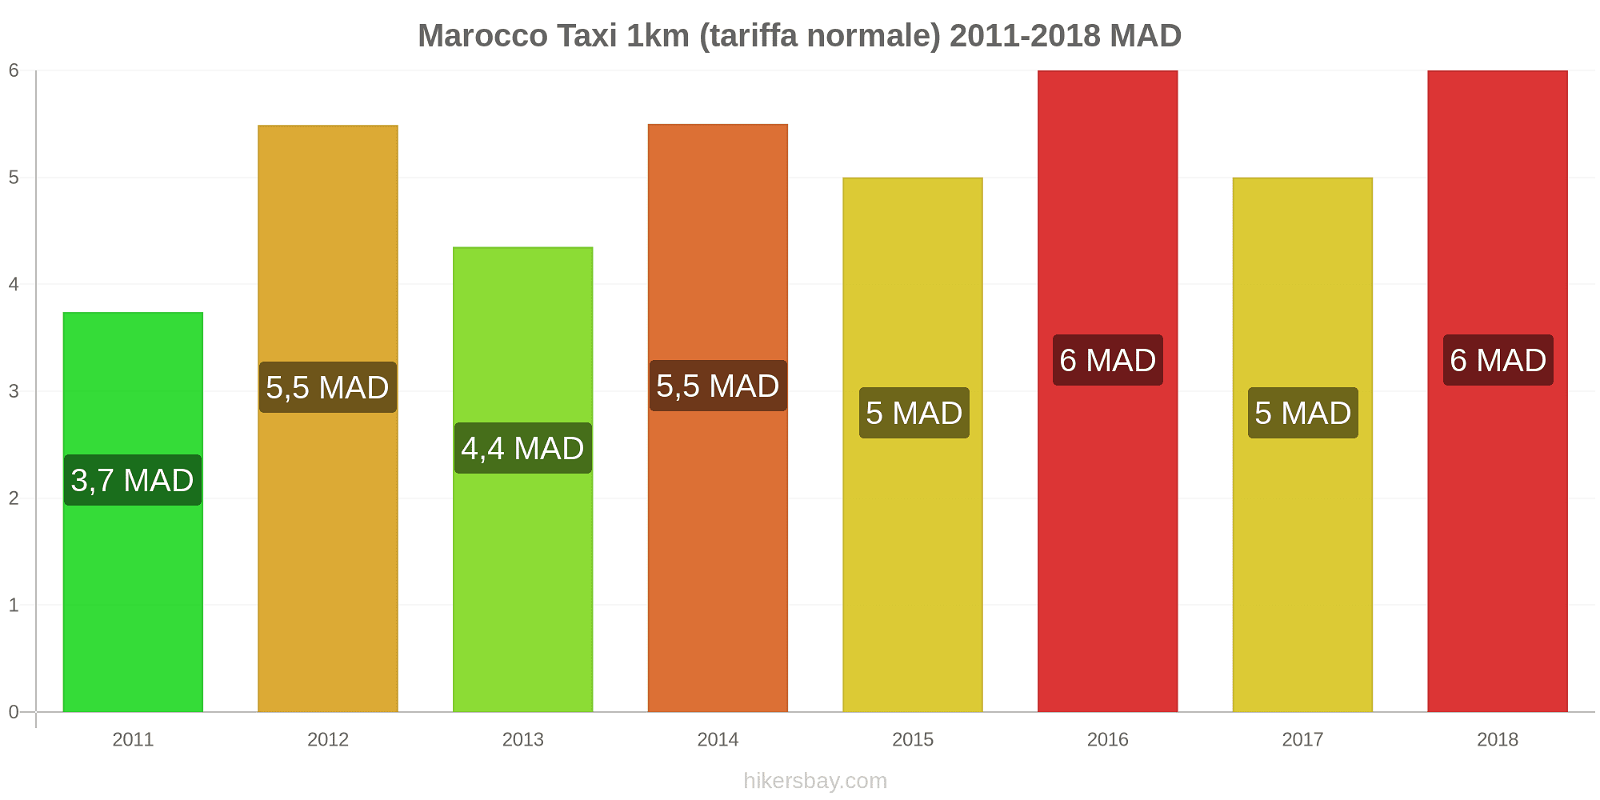 Marocco cambi di prezzo Taxi 1km (tariffa normale) hikersbay.com